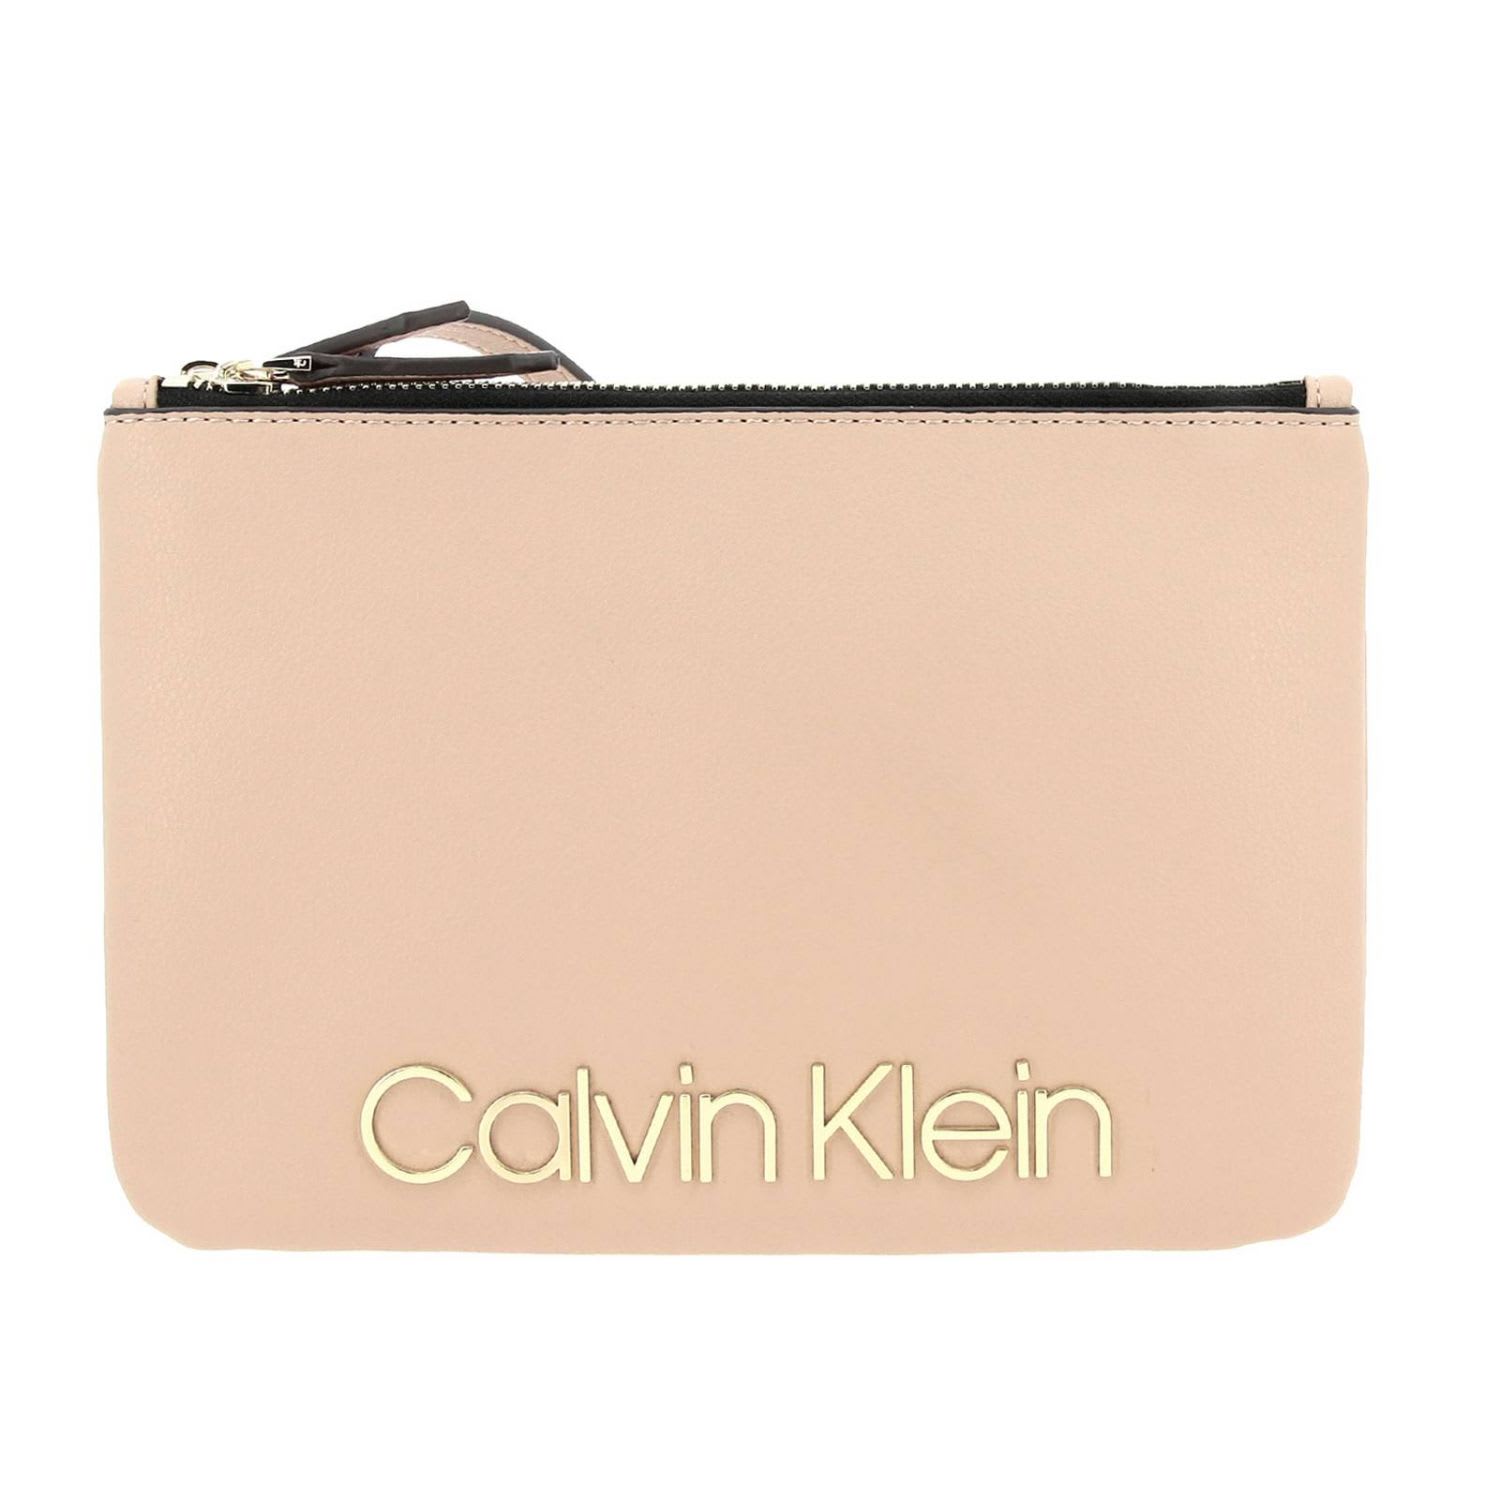 calvin klein pink wallet